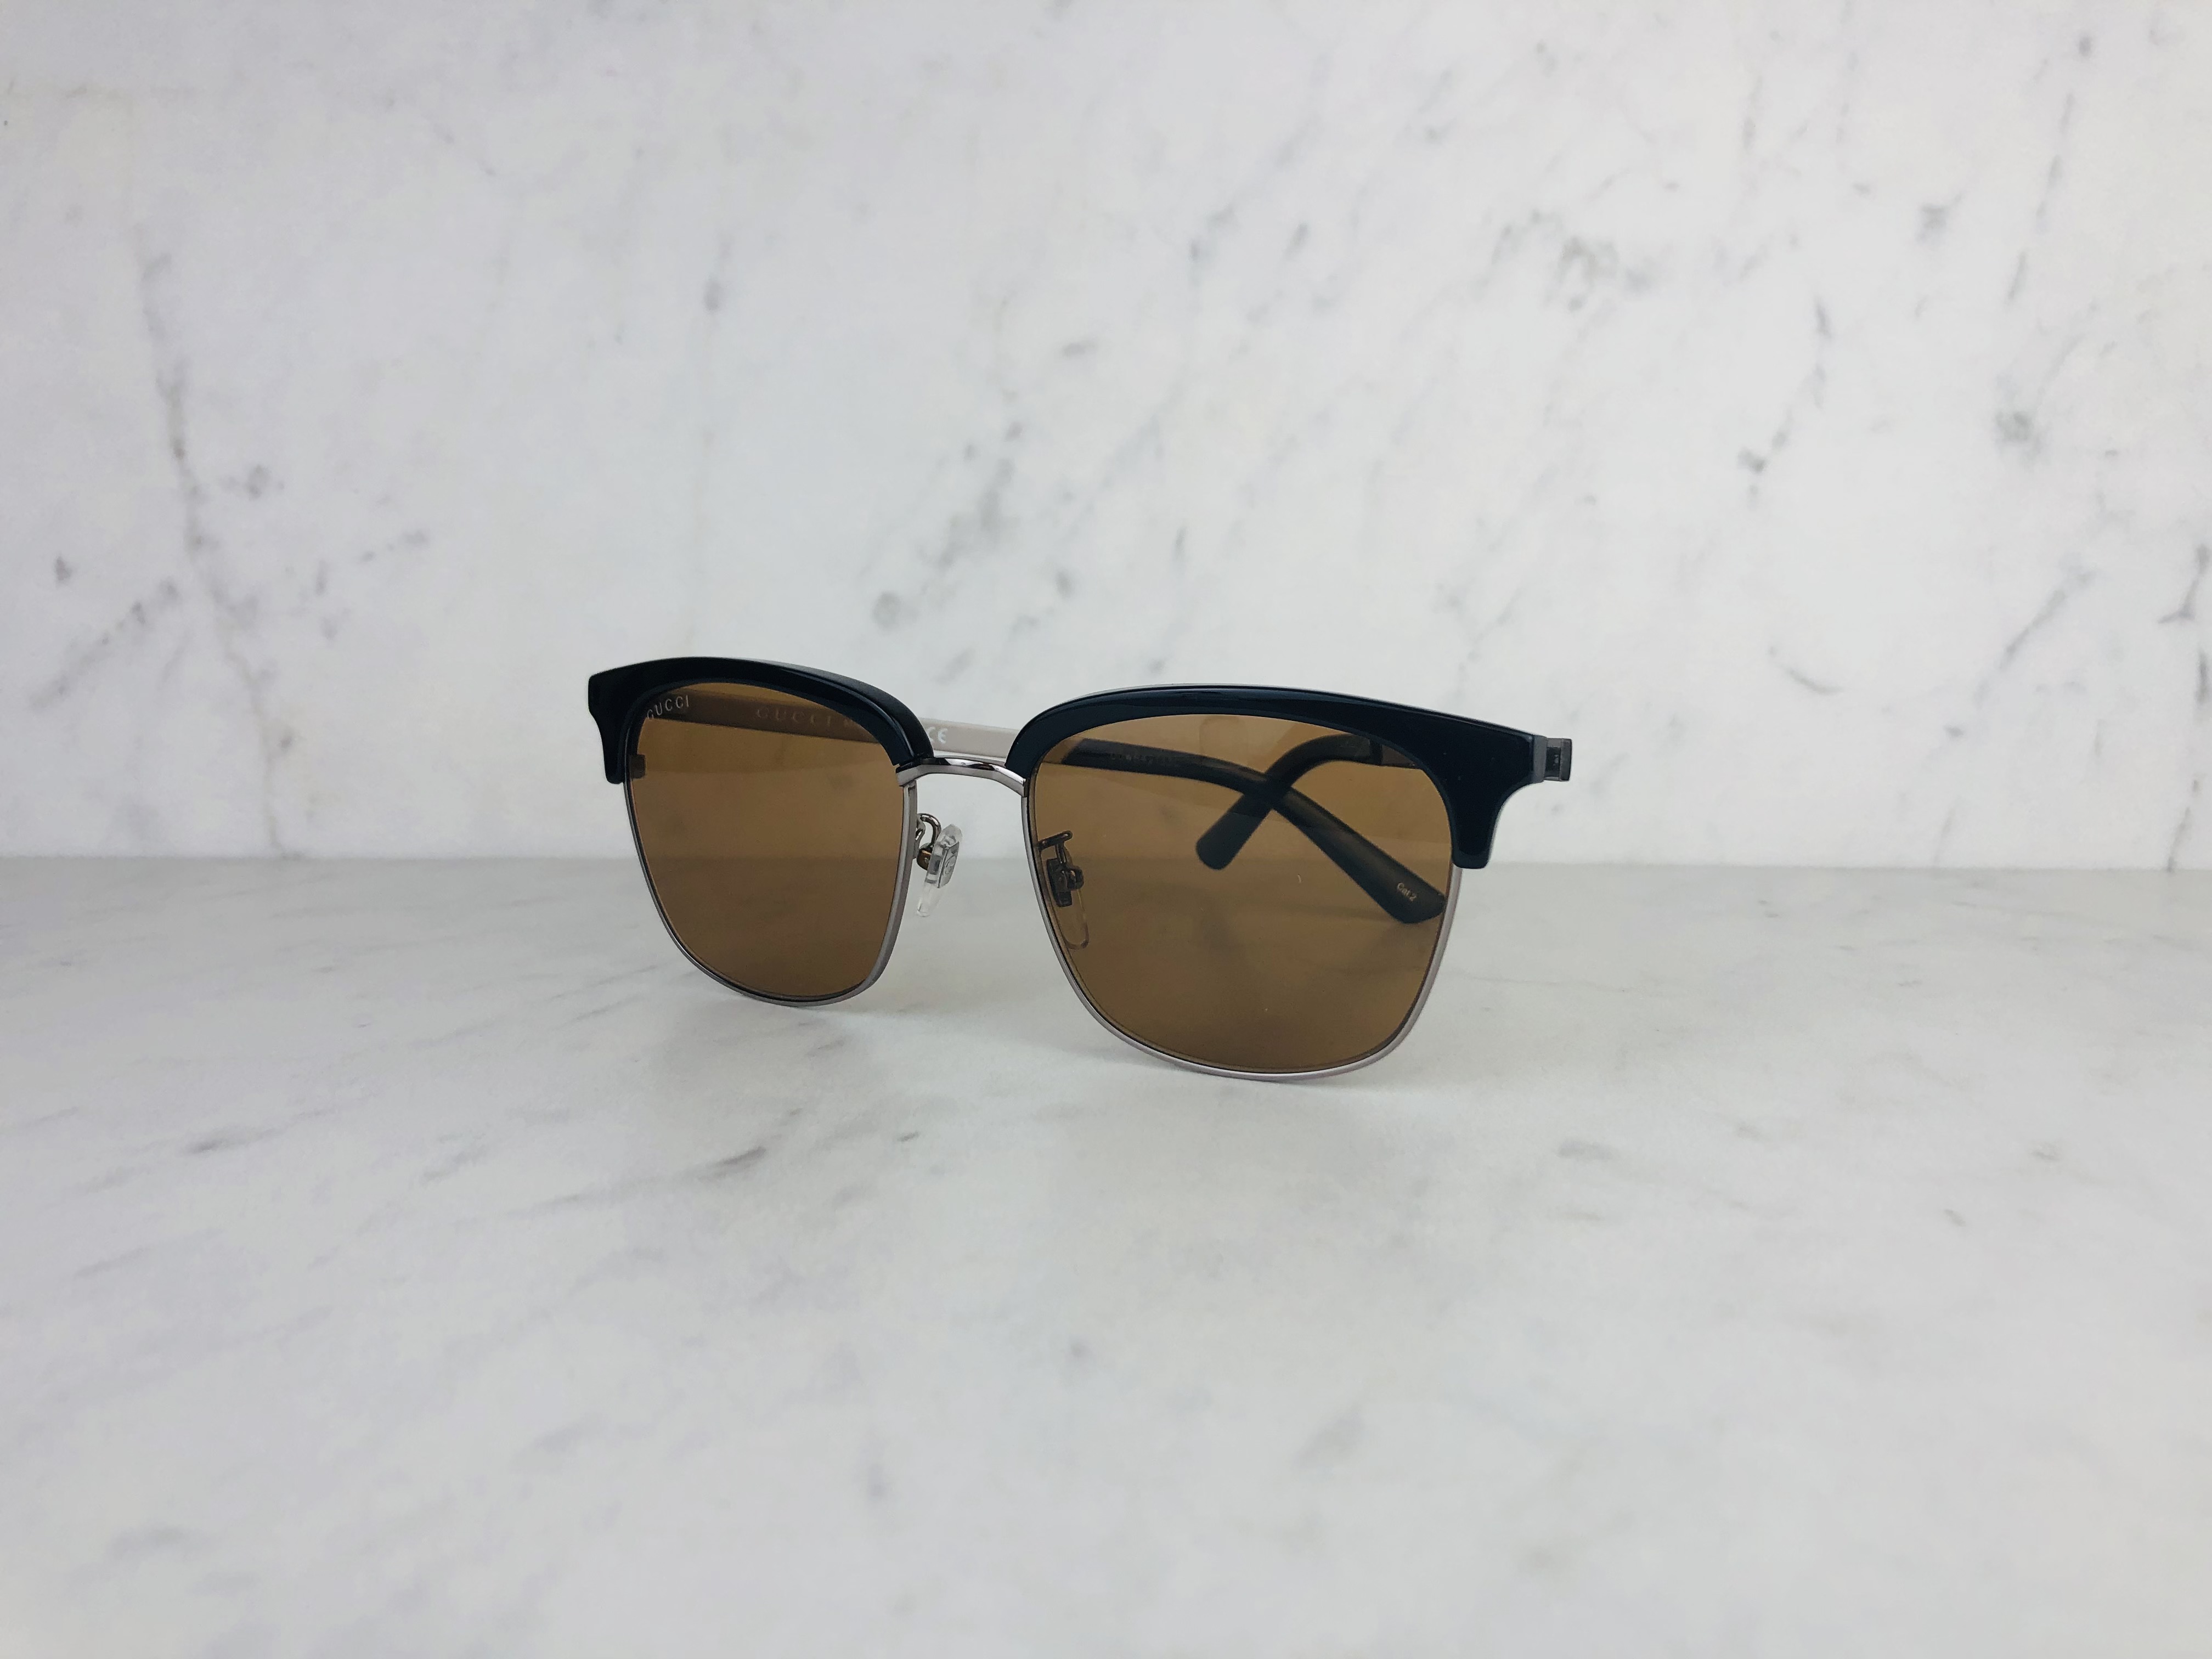 women's sunglasses brand: Gucci, non-rx able